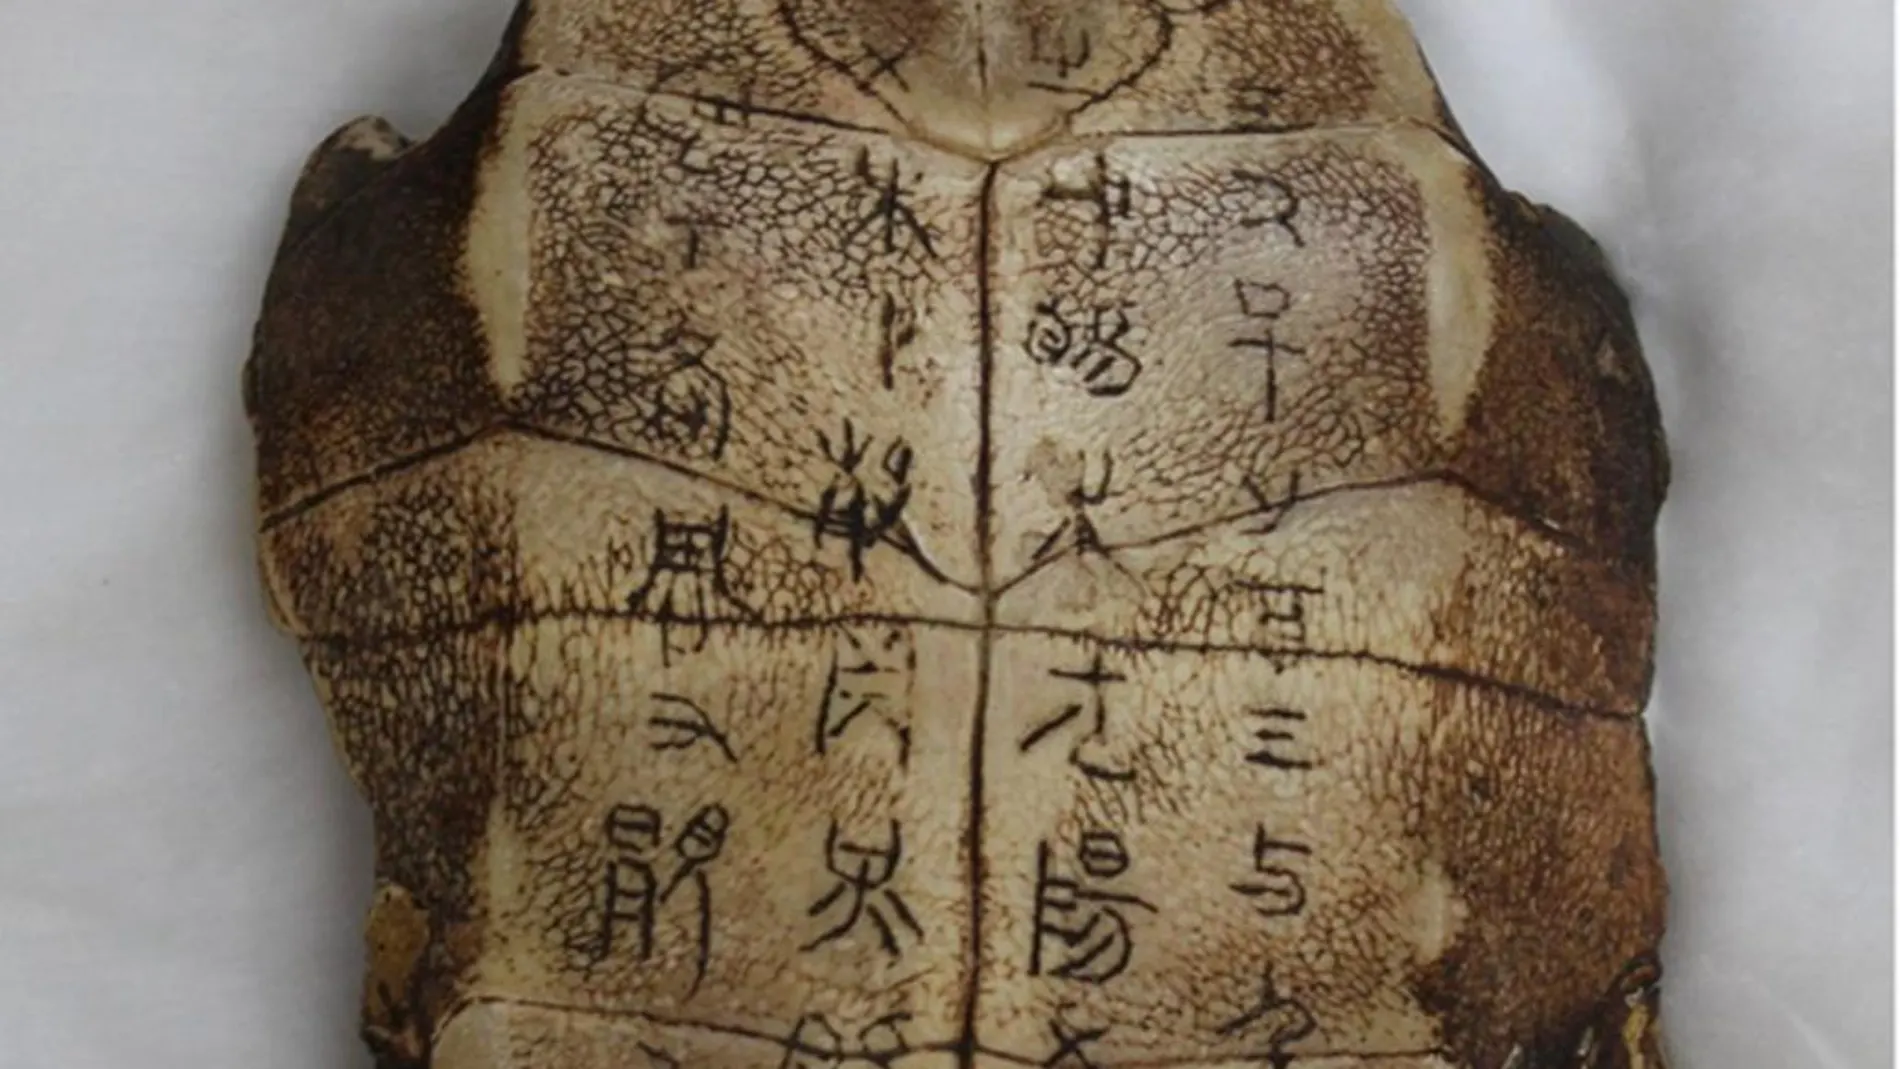 Caracteres sin descifrar tallados en una antigua concha de tortuga